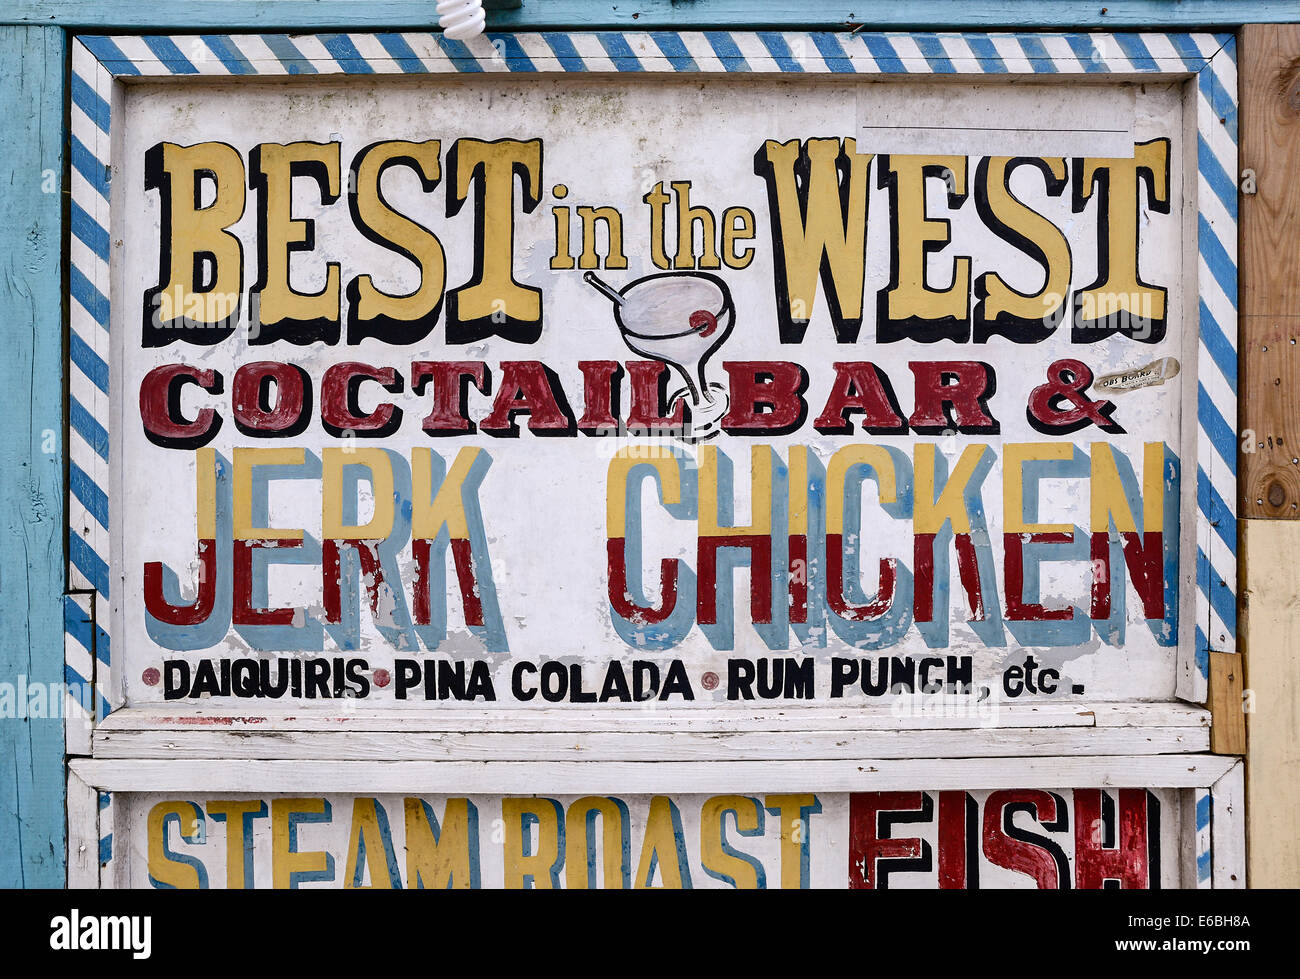 Best in the West jerk chicken restaurant, Negril, Jamaica Stock Photo